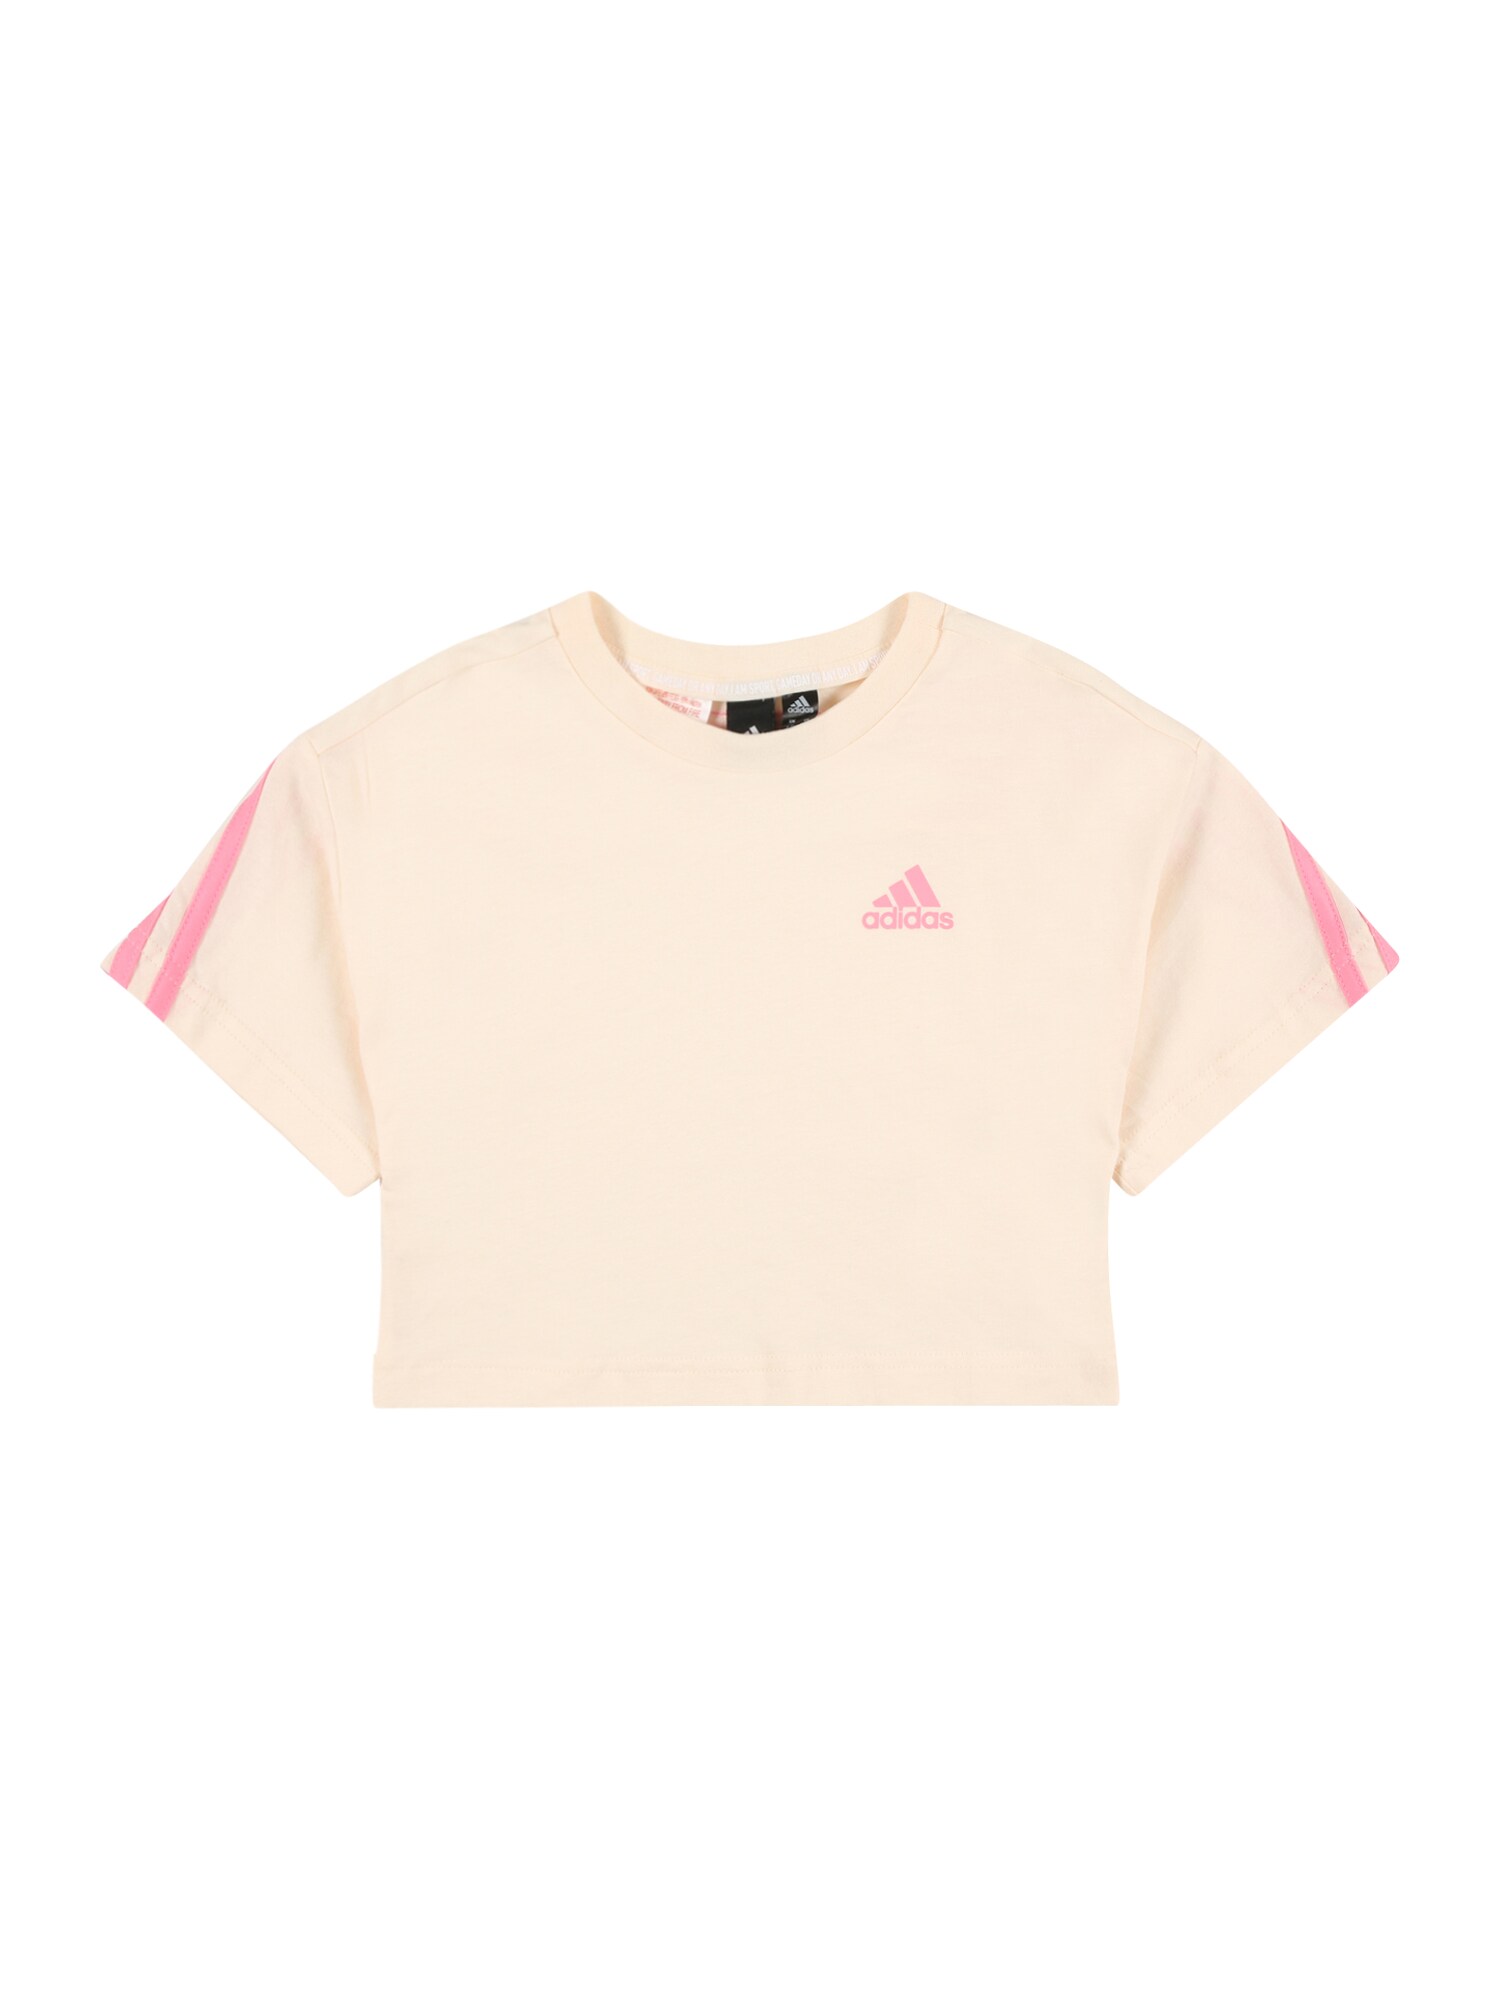 ADIDAS PERFORMANCE Sporta krekls miesaskrāsas / gaiši rozā